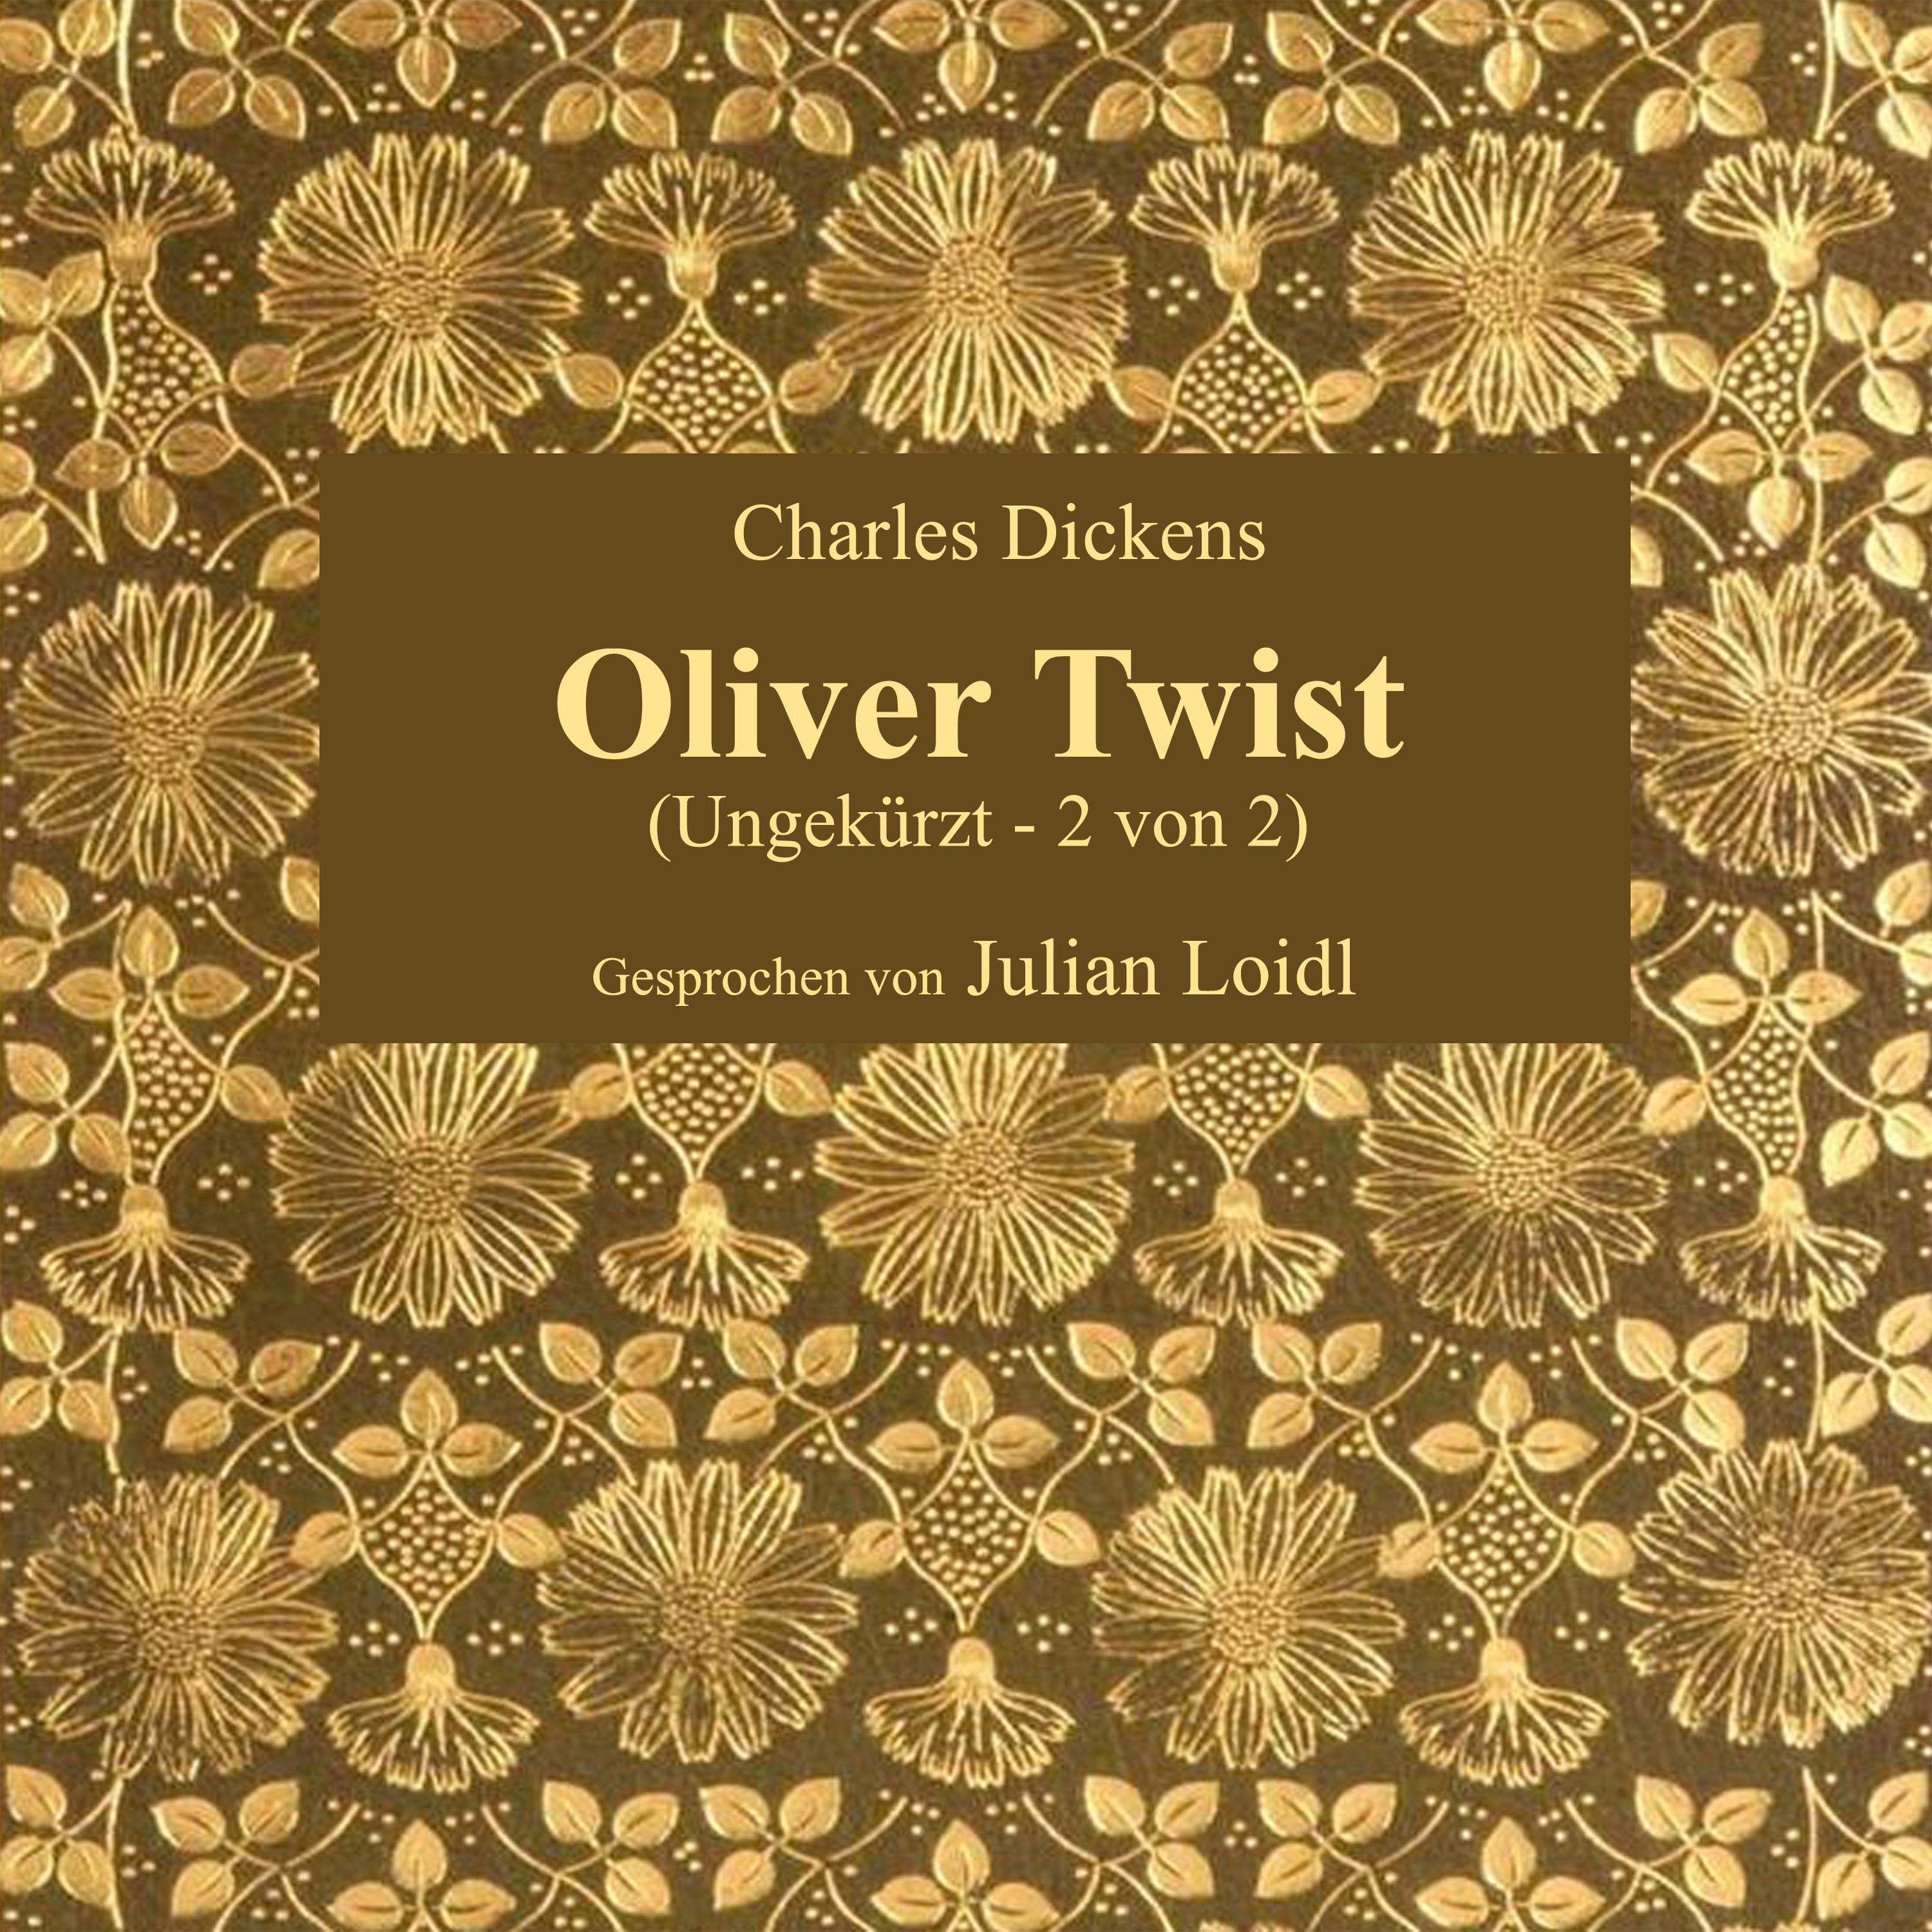 Kapitel 36: Oliver Twist (Teil 6)